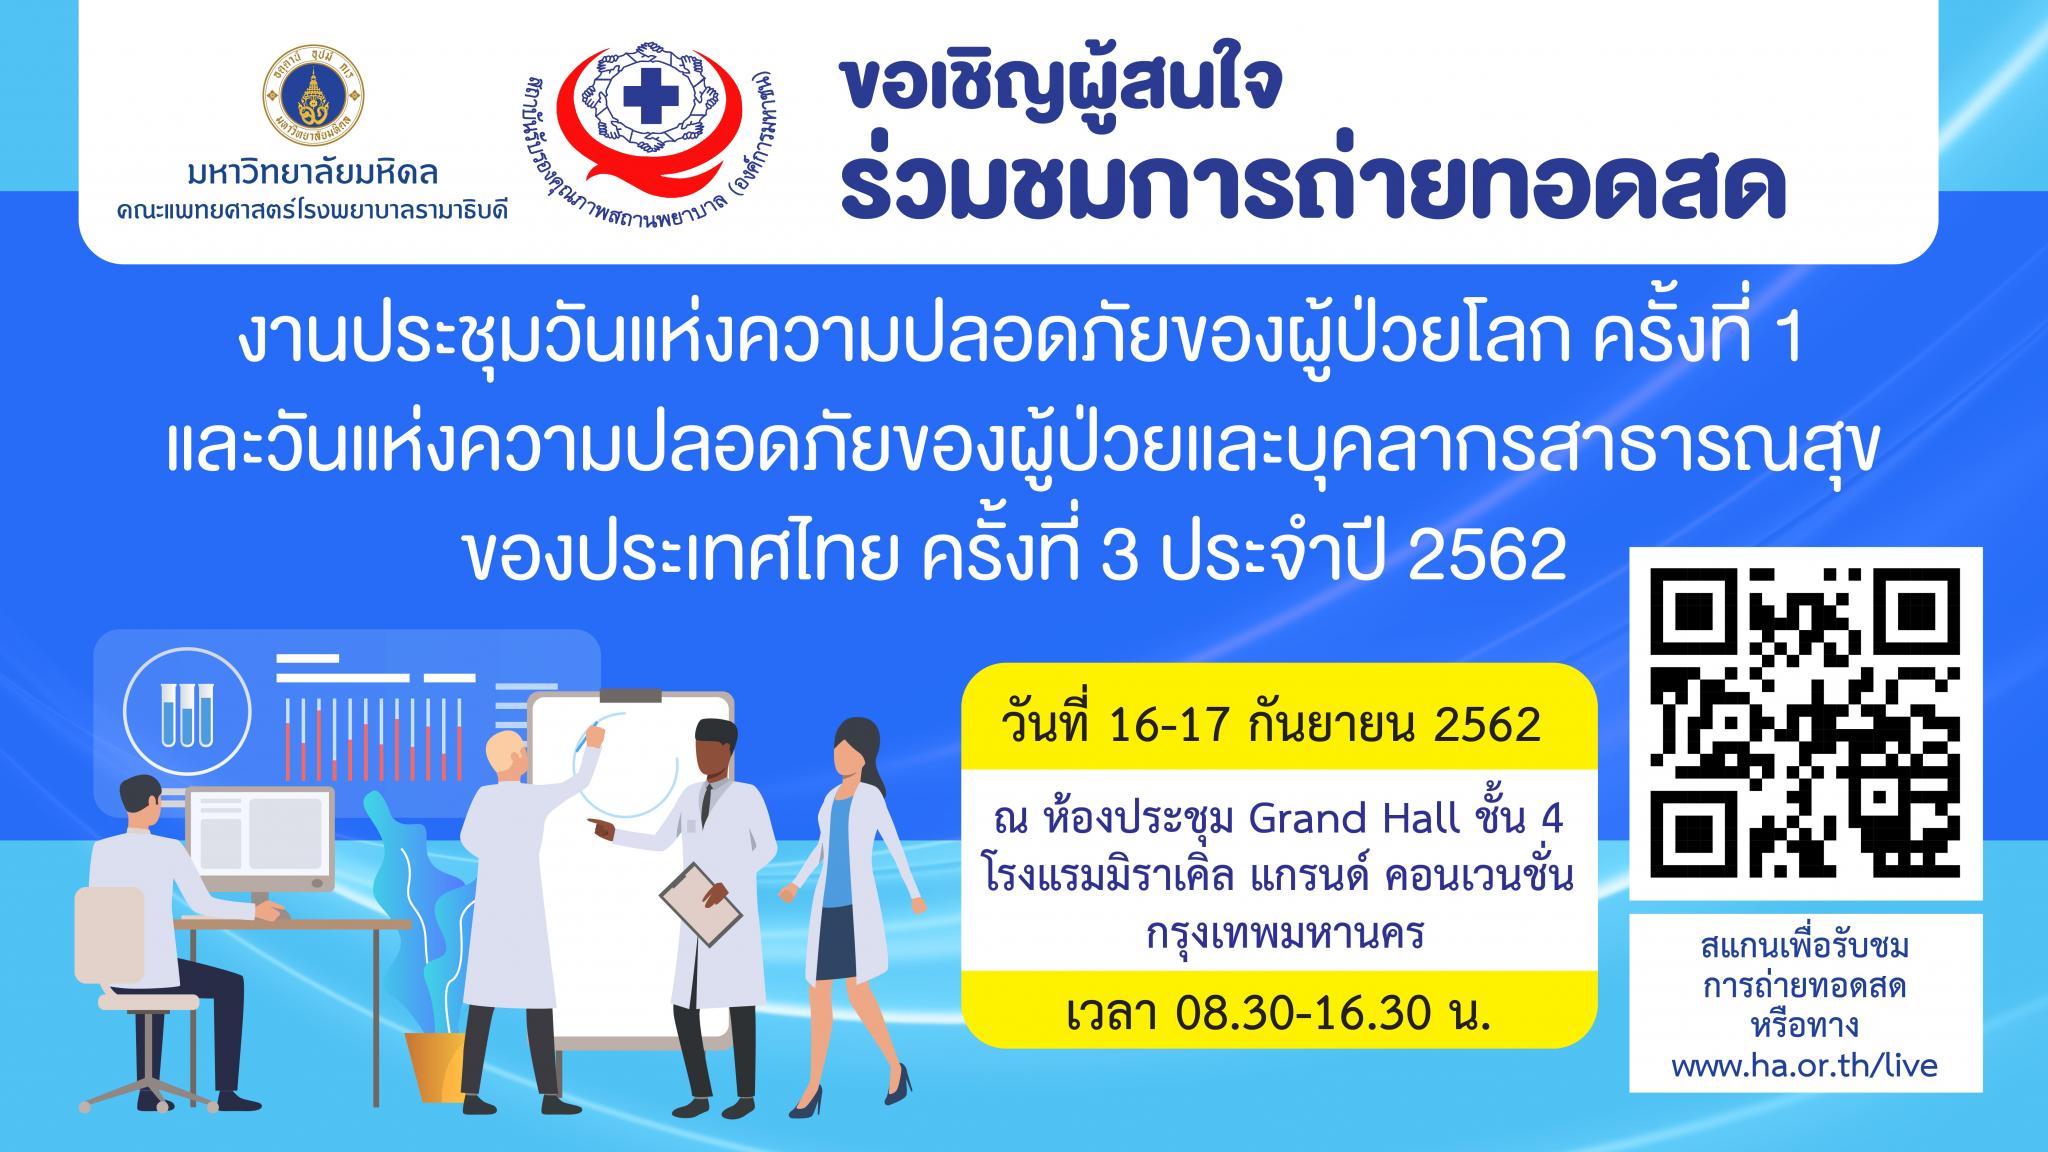 ขอเชิญผู้สนใจร่วมชมการถ่ายทอดสด งานประชุมวันแห่งความปลอดภัยของผู้ป่วยโลก ครั้งที่ 1 และวันแห่งความปลอดภัยของผู้ป่วยและบุคลากรสาธารณสุขของประเทศไทย ครั้งที่ 3 ประจำปี 2562